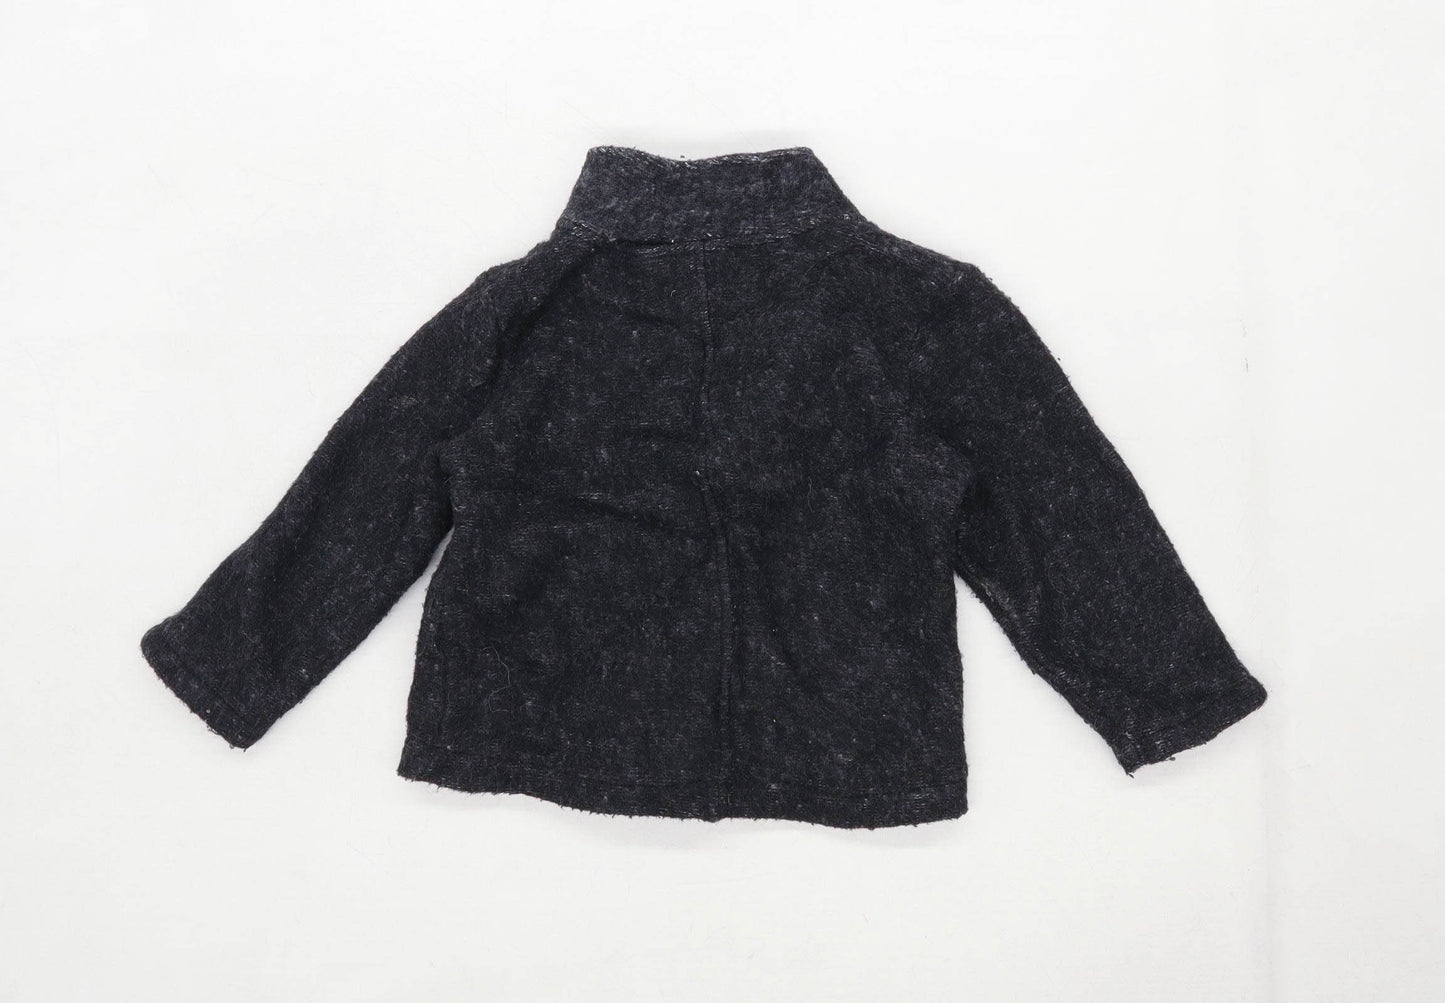 Zara Girls Grey Jacket Age 3-4 Years